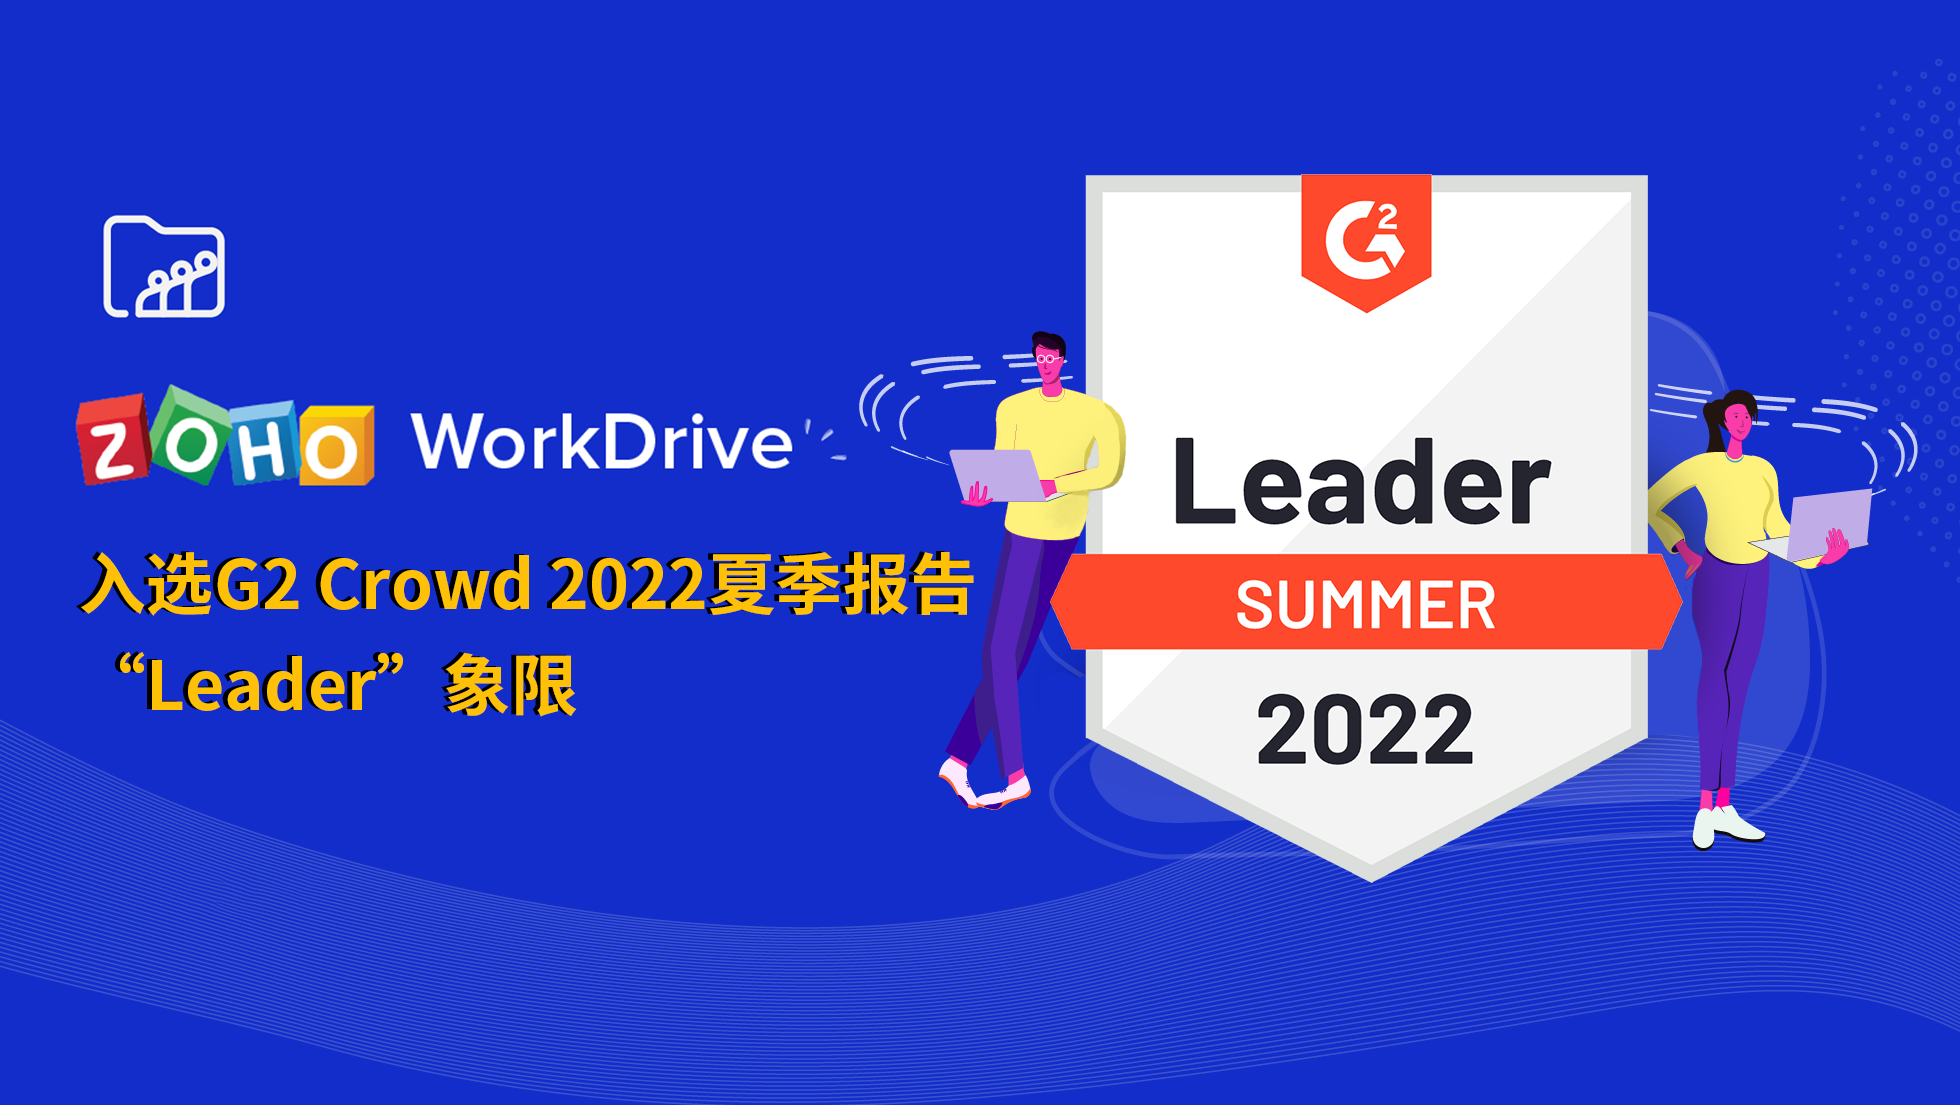 成绩斐然，Zoho WorkDrive企业网盘入选G2 Crowd 2022夏季报告 “Leader”象限